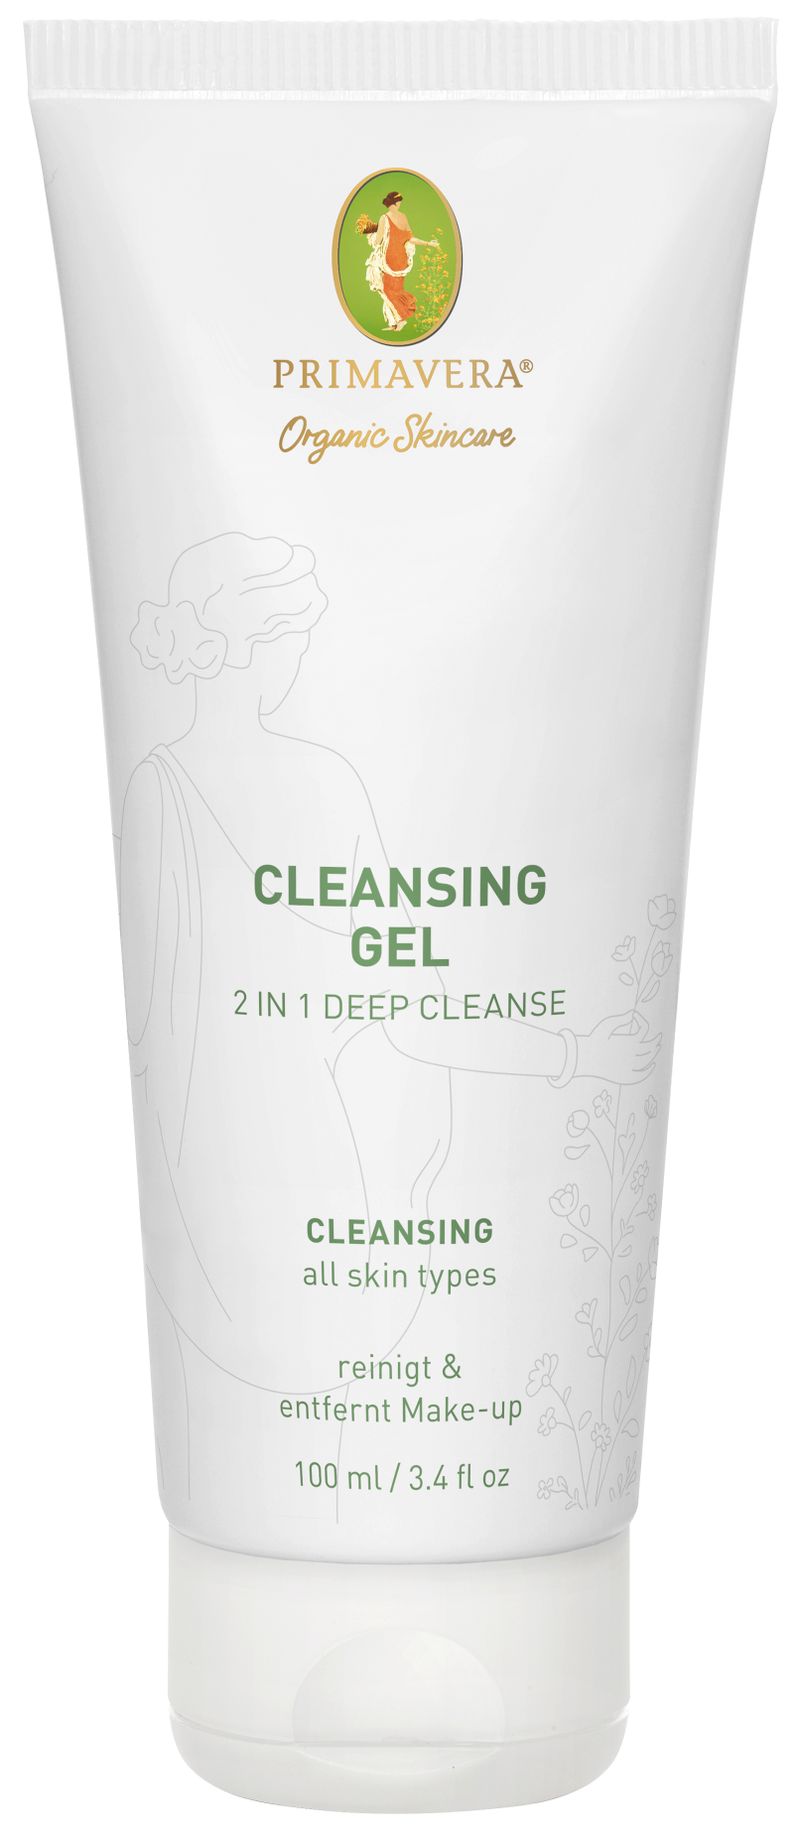 Cleansing Gel - 2 in 1 Deep Cleanse